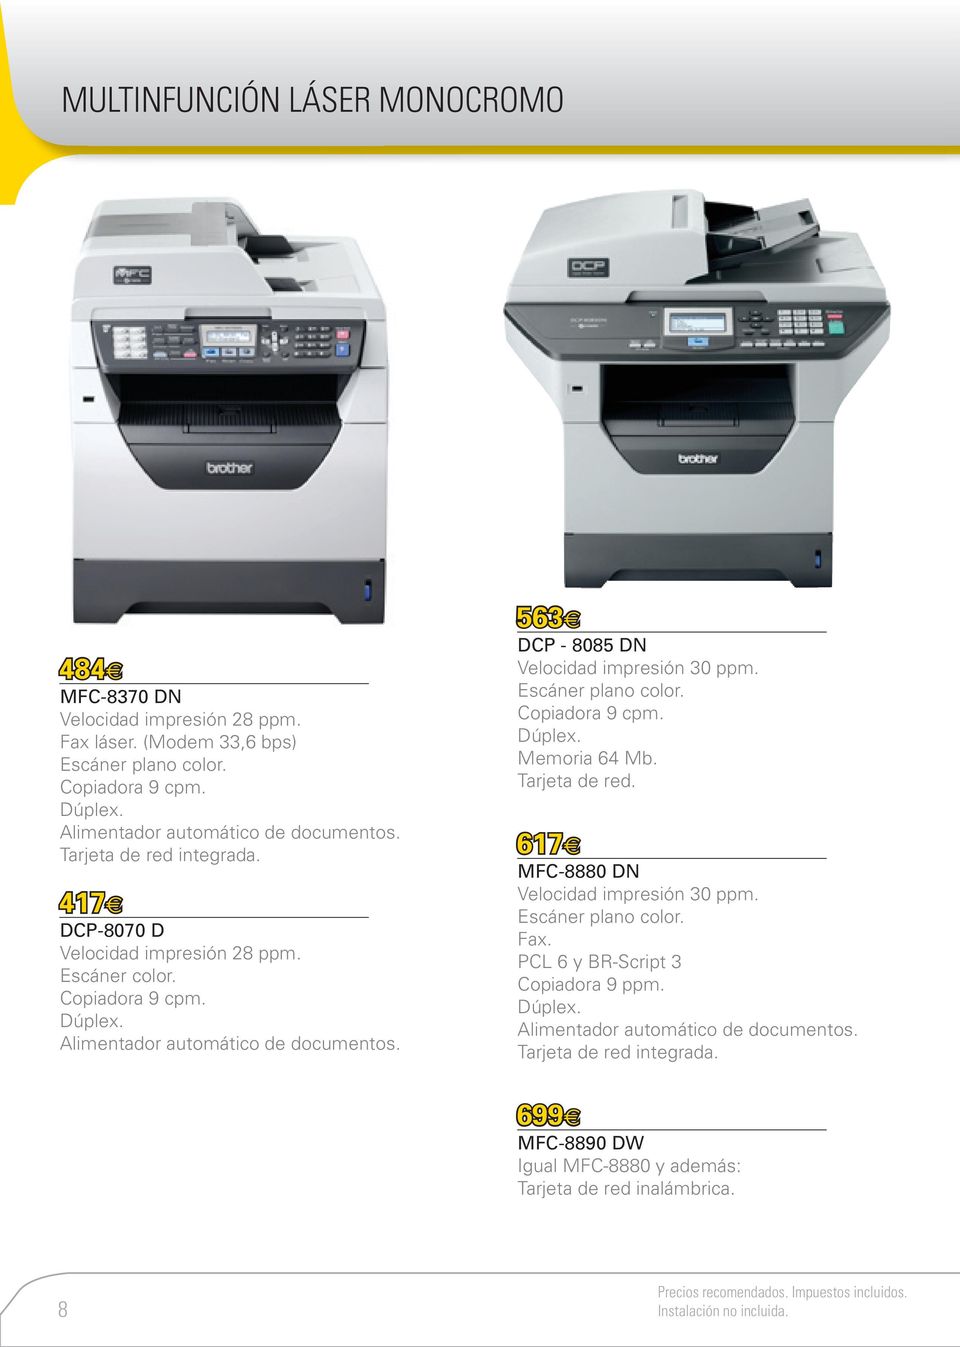 Alimentador automático de documentos. 563 DCP - 8085 DN Velocidad impresión 30 ppm. Escáner plano color. Dúplex. Memoria 64 Mb.